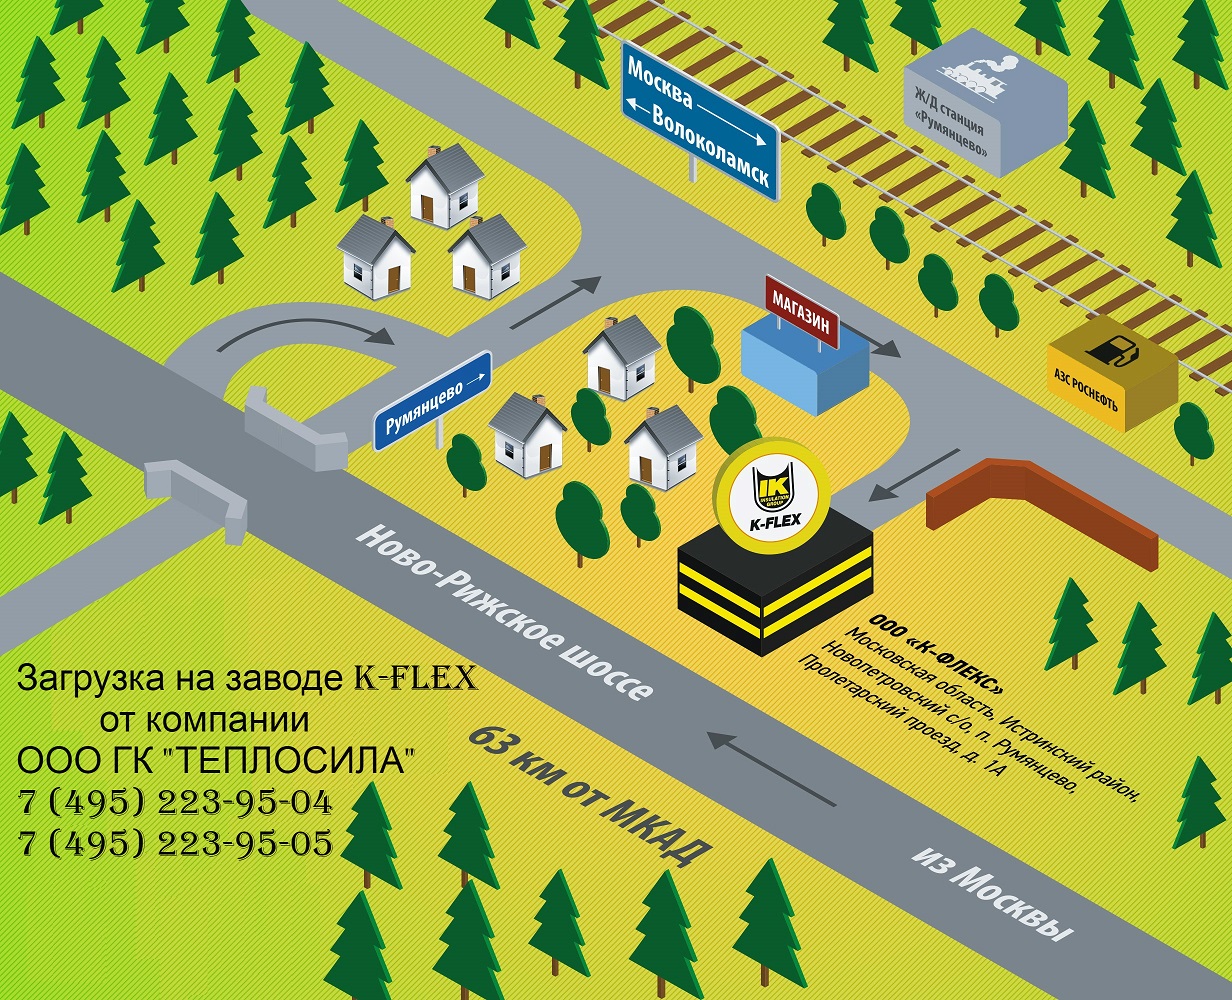 Схема проезда на завод K-FLEX п.Румянцево